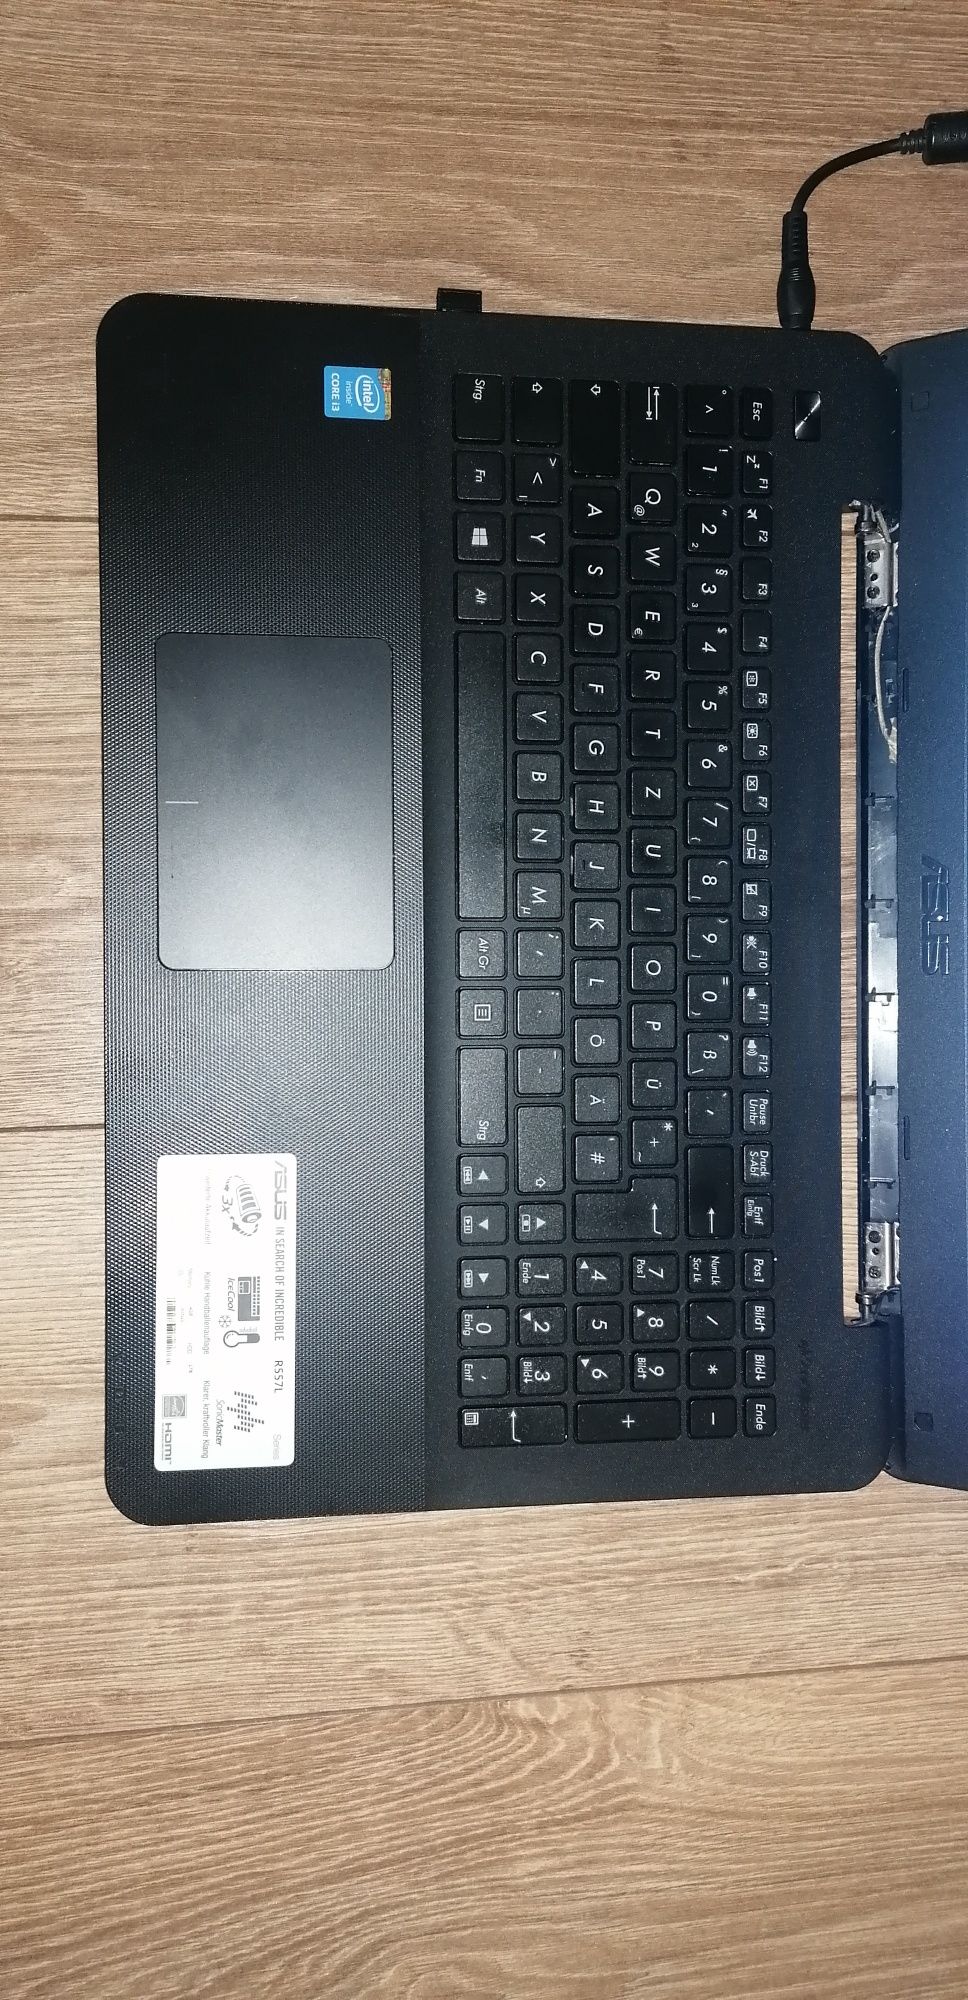 Laptop Asus R557L, Intel i3 4005u, hdd 750gb, 6gb ram